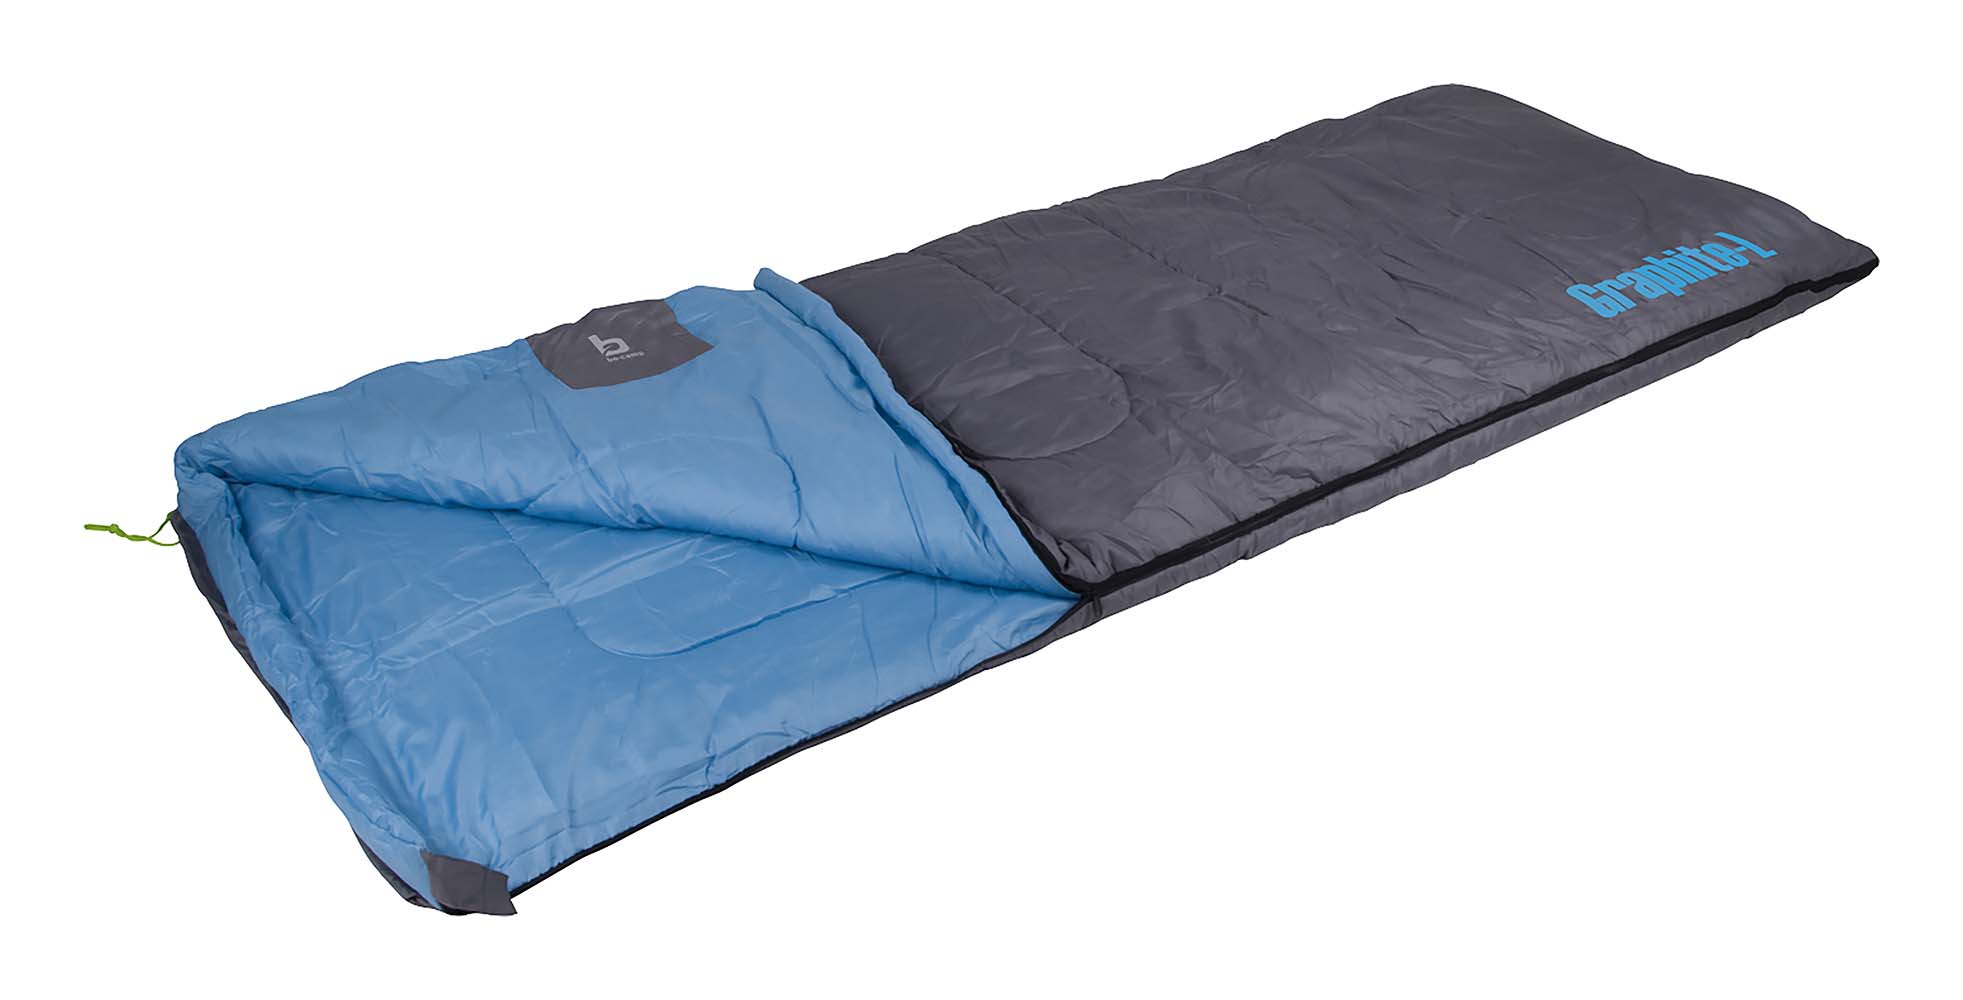 3605753 Un cómodo saco de dormir. Apto para uso a partir de 2 grados, y muy cómodo a partir de 12 grados. Con relleno de Fibra Hueca 3D de 250 g/m² de alta calidad. Este saco de dormir también tiene un suave forro interior y exterior de algodón poliéster. Al abrir la cremallera, el saco de dormir se puede utilizar como manta o guardarlo en otro saco de dormir Bo-Camp. Este saco de dormir tiene regulación de temperatura mediante una cremallera en el extremo de los pies, un cordón, un cómodo borde superior y un bolsillo para dinero en el interior. Compacto para llevar en el estuche provisto.